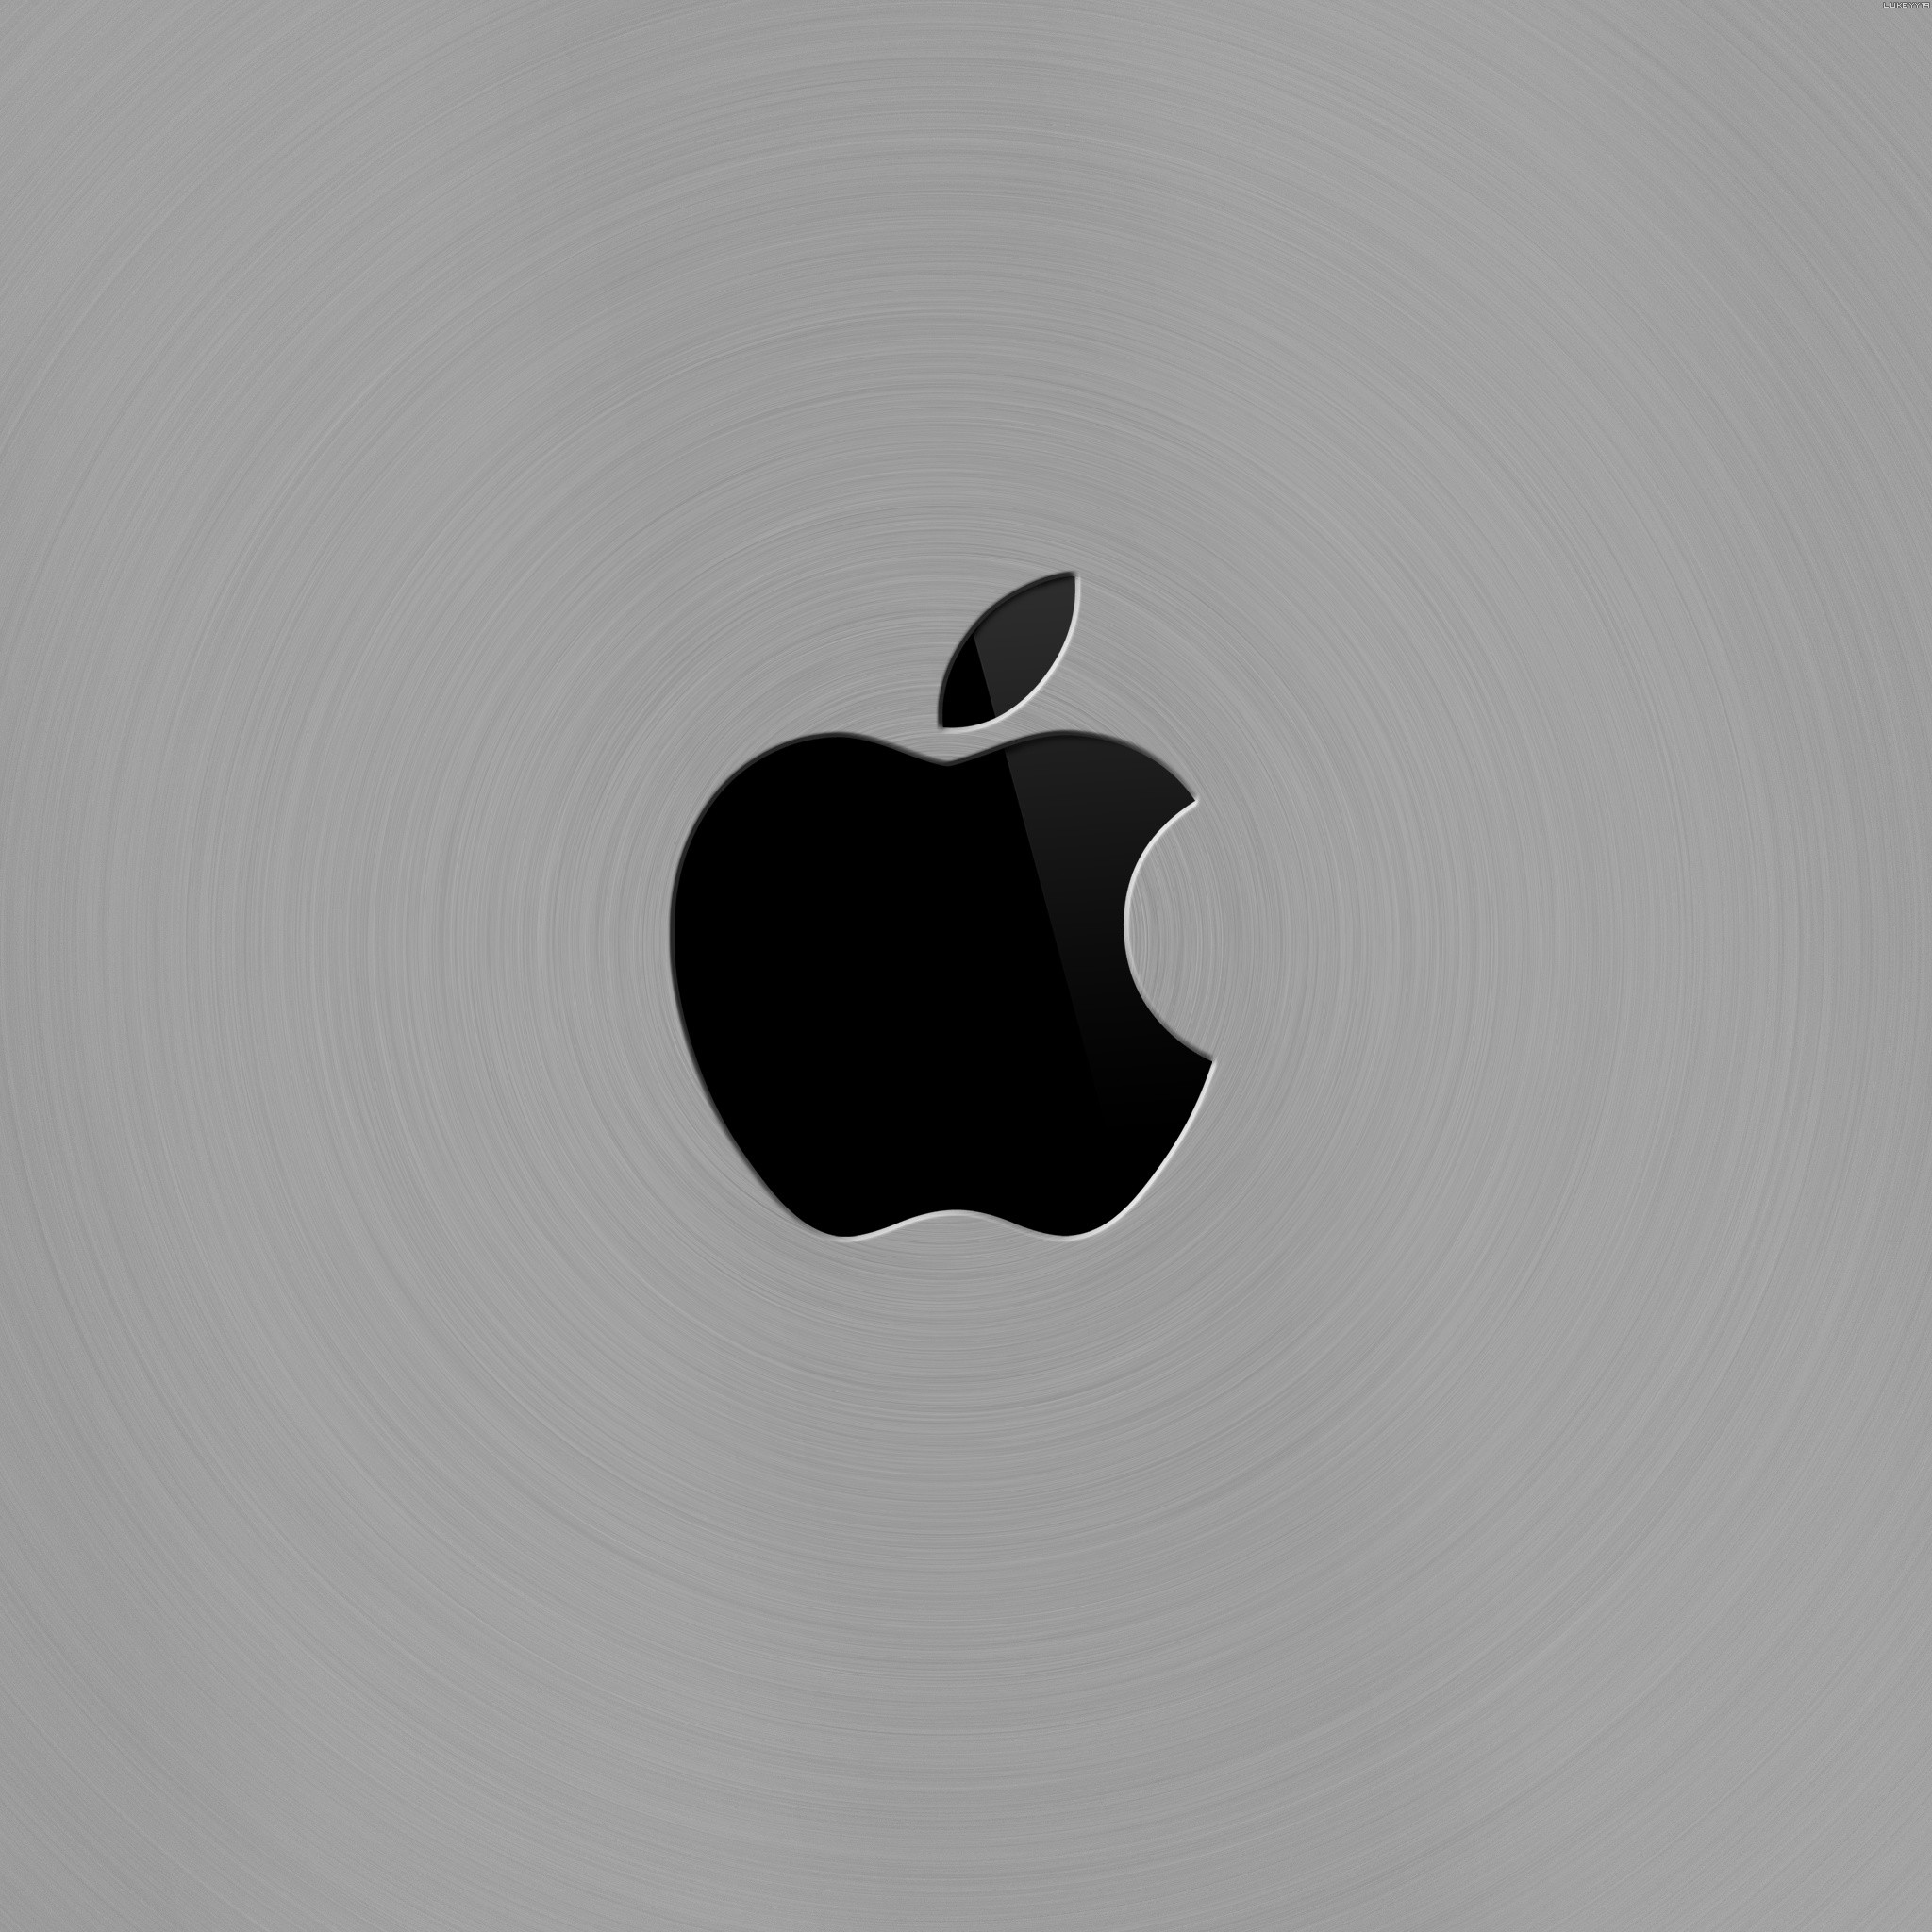 2048x2048 My Ipad Mini Wallpaper Hd Apple Logo | CloudPix